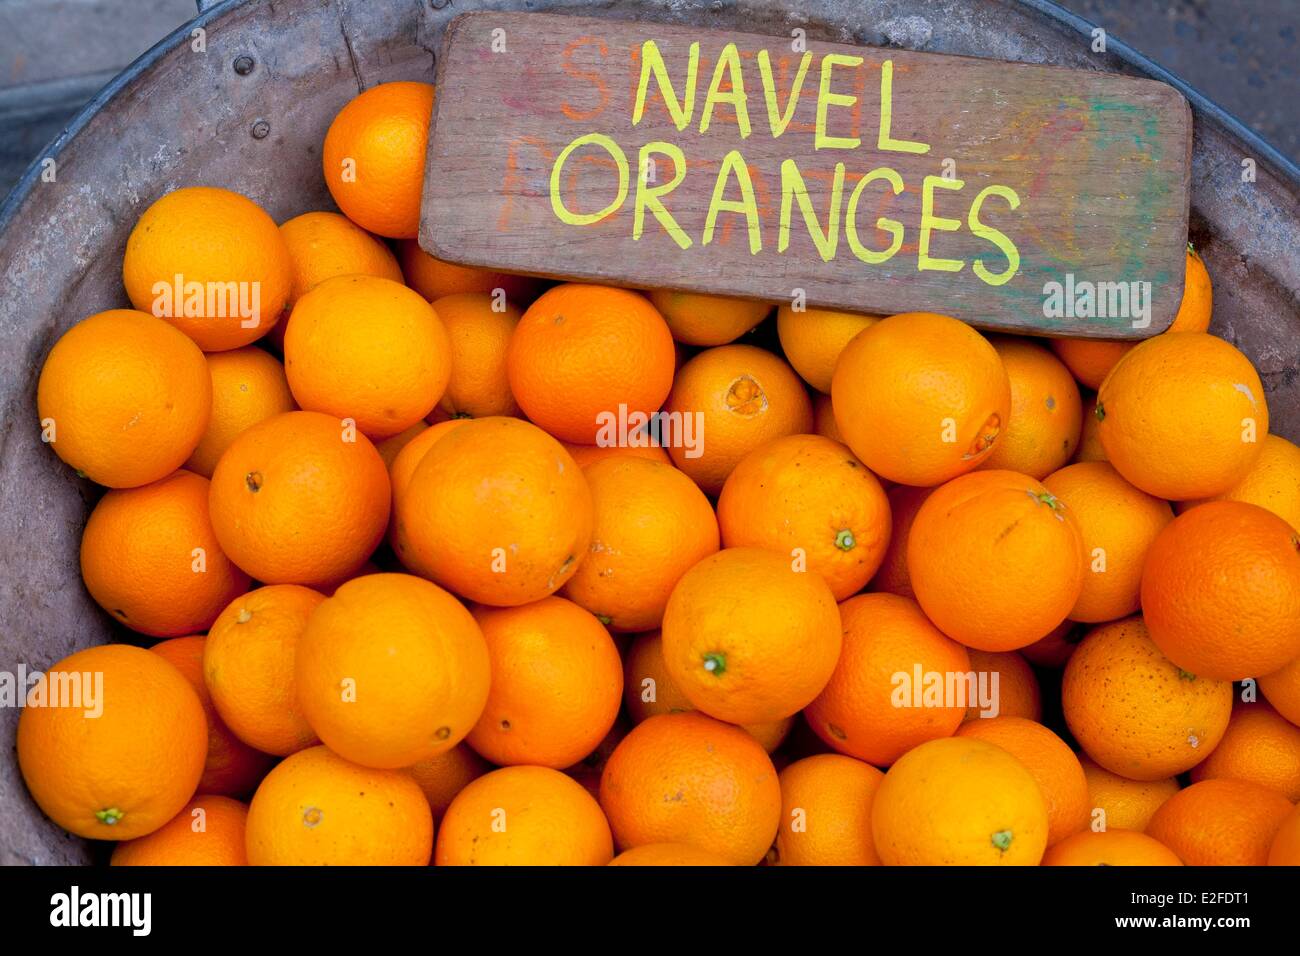 Regno Unito, Londra, Southwark, Bermondsey, Maltby Street, il mercato del sabato. fondata nel 2010, organico arance Foto Stock